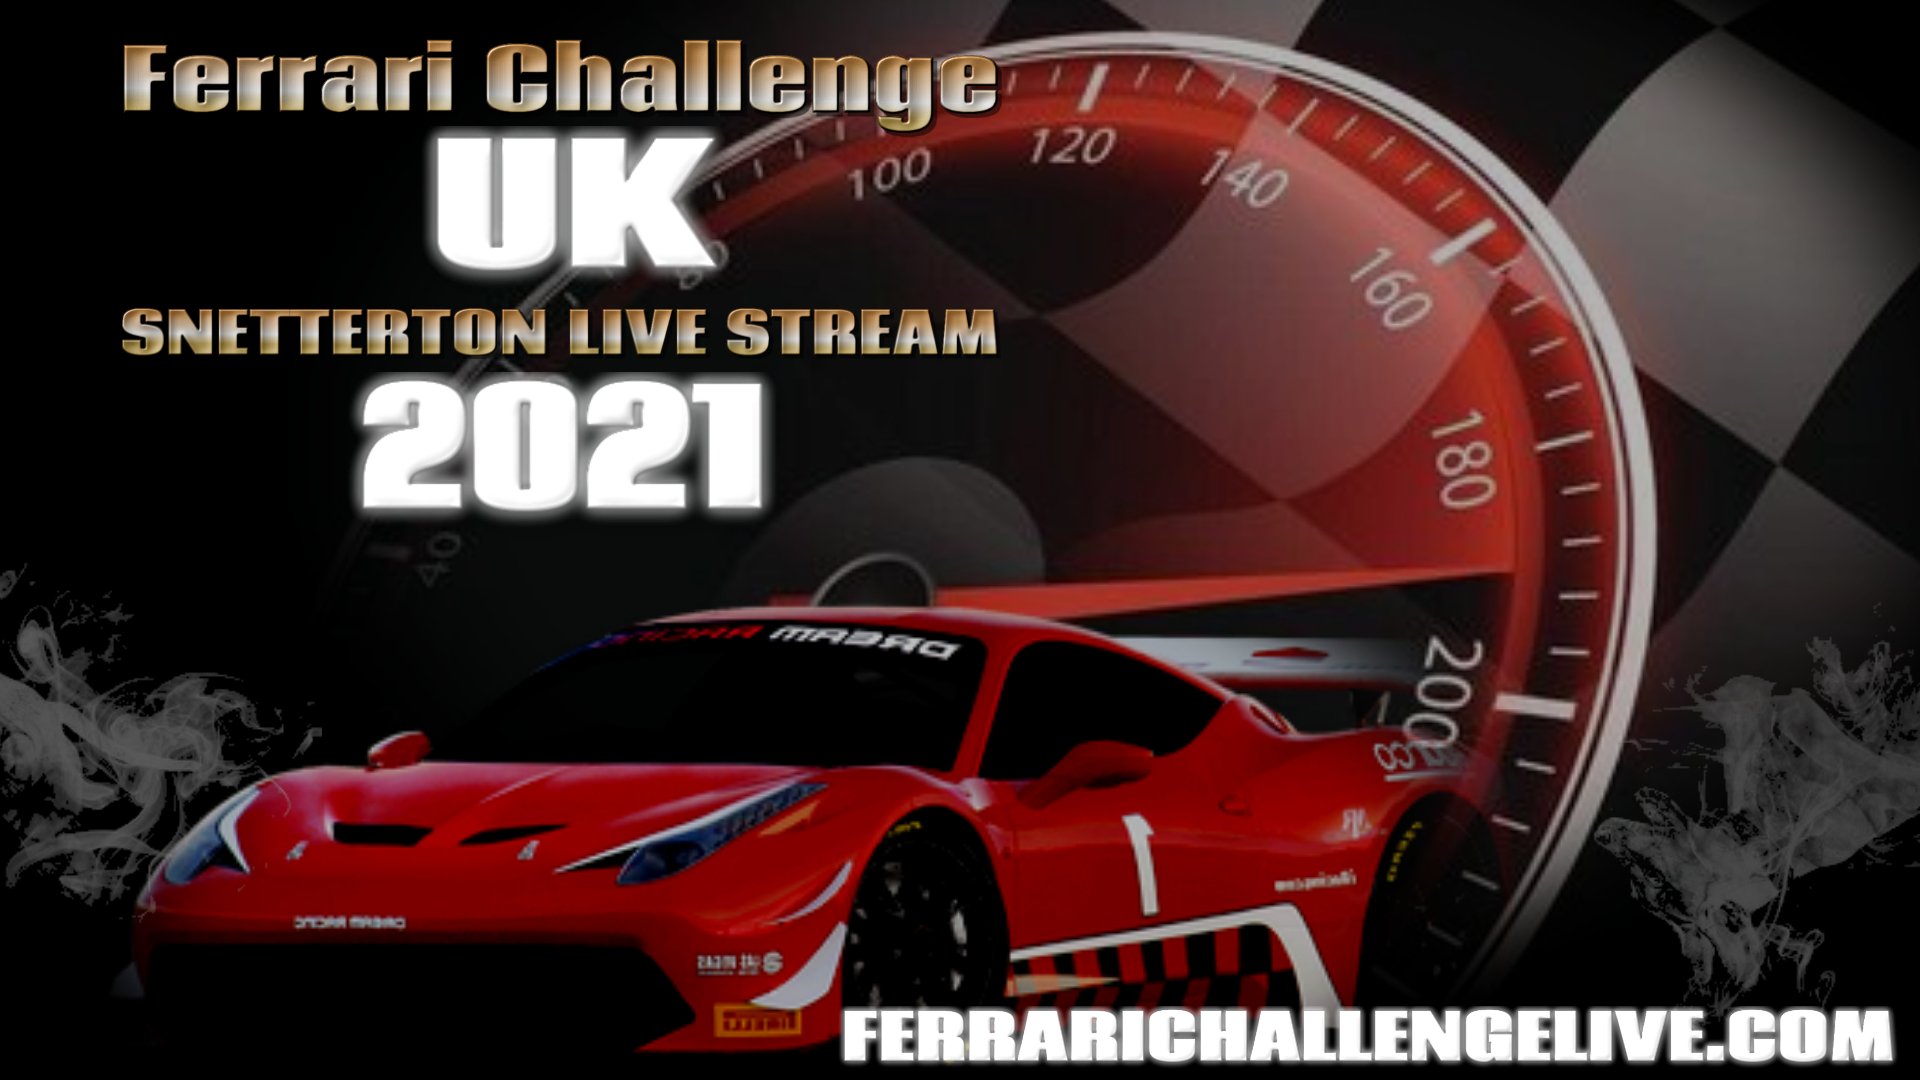 Snetterton Ferrari Challenge UK Race Live Stream